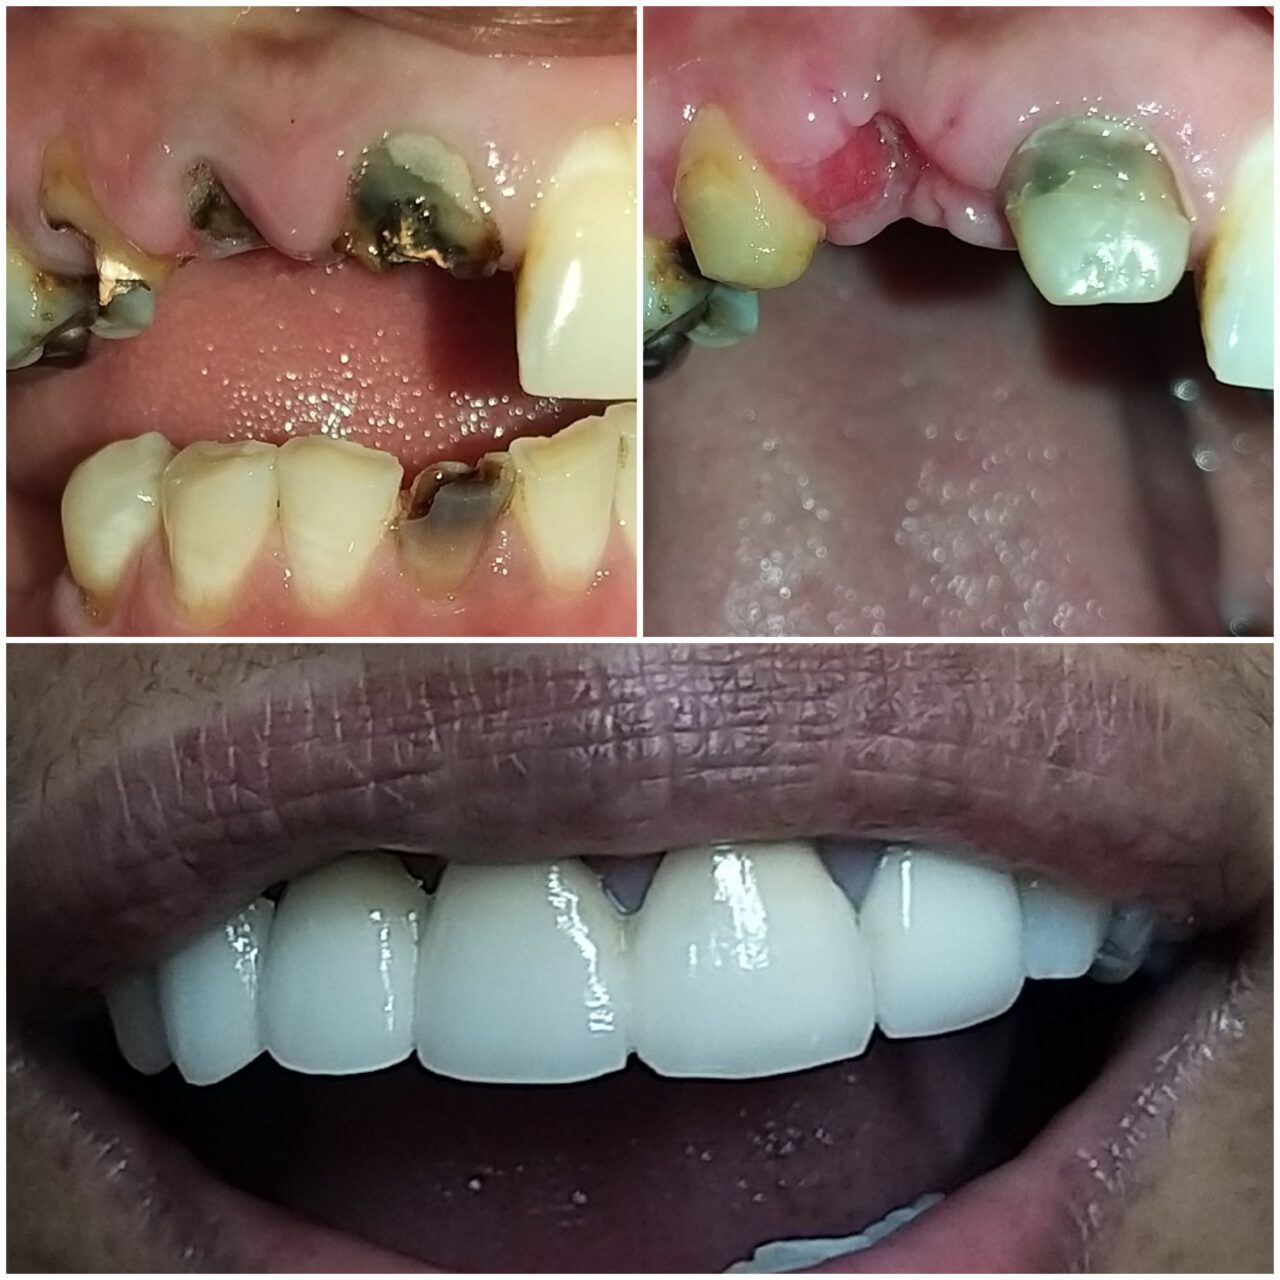 full mouth rehabilitation with ceramic bridge - 3